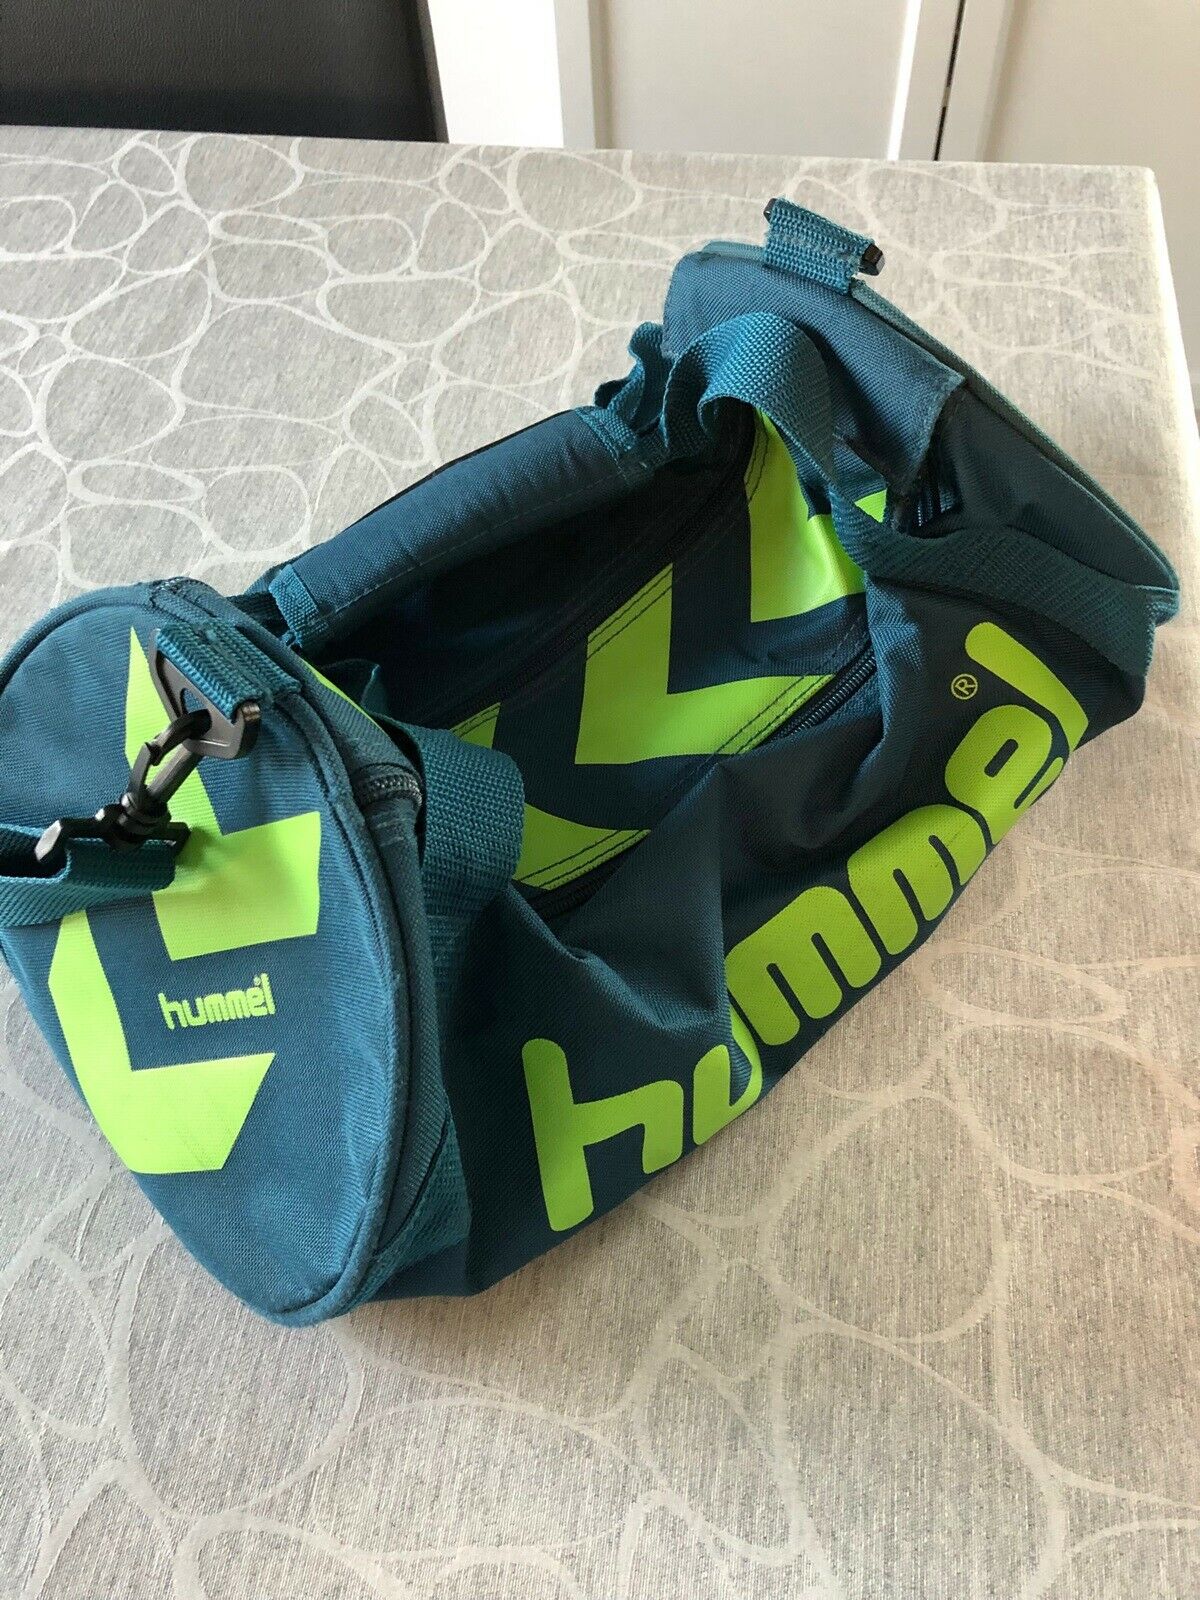 Sportstaske, Hummel sports taske, Hummel – – Køb og Salg af Nyt og Brugt